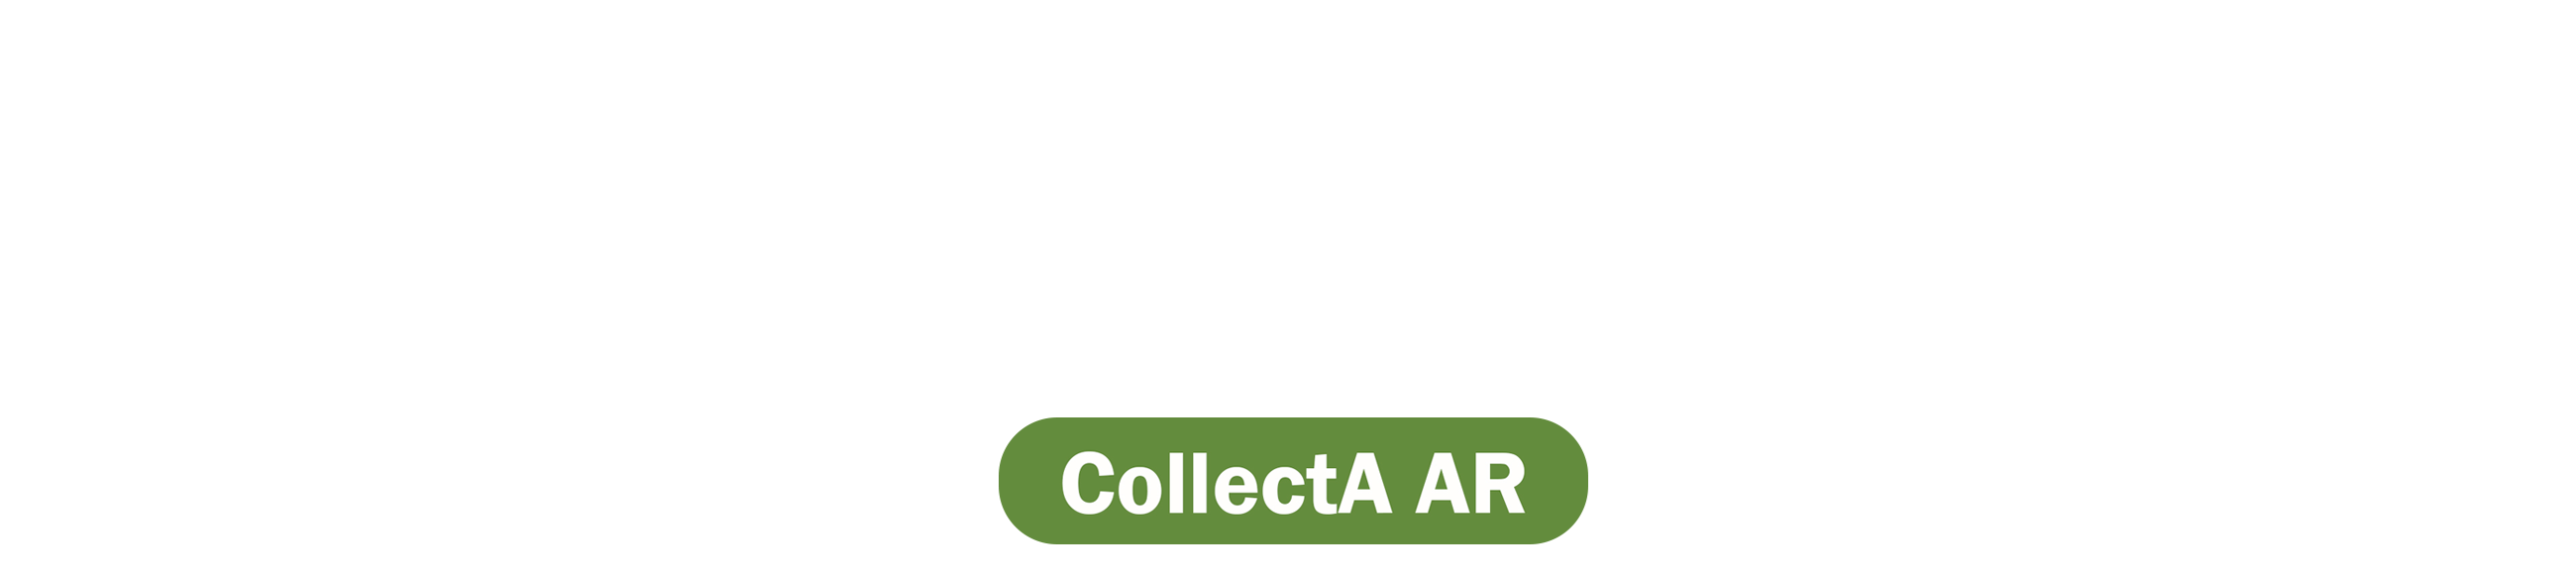 Collecta AR